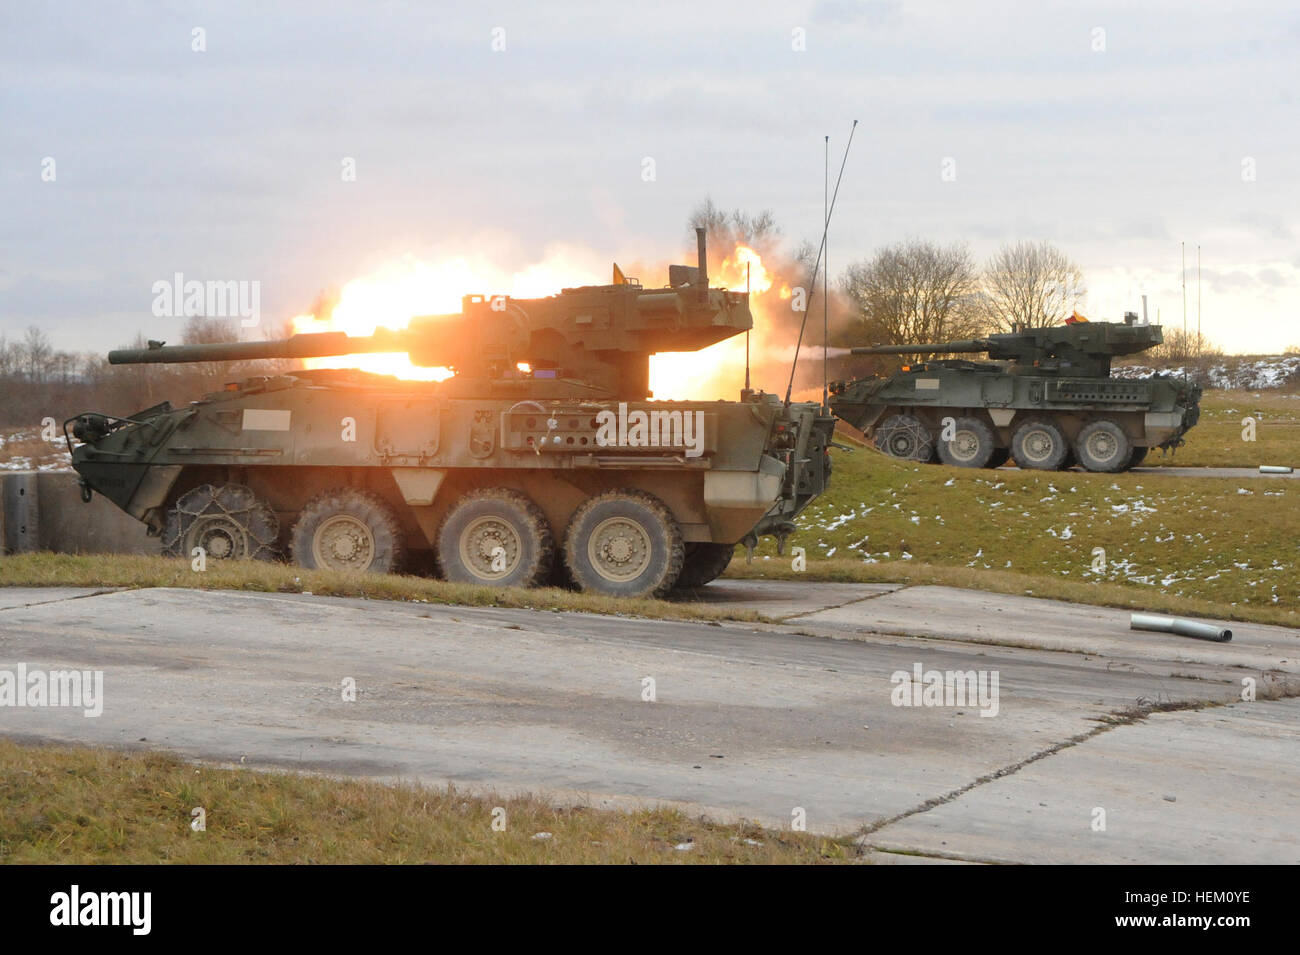 Ein Fahrzeug der US-Armee Stryker Mobile Gun System feuert seine 105 mm Kanone während Operation eiserne Panzer. Eisen-Panzer ist eine kombinierte live-Feuer-Übung zwischen 3. Staffel der US-Armee, 2. Kavallerie-Regiment und 4. Kompanie der Bundeswehr, 104. Panzer Bataillon. Dies ist die erste kombinierte live-Feuer-Übung, die der deutsche Leopard 2-Panzer und dem amerikanischen Stryker Mobile Gun System zu übernehmen. "Eiserne Panzer" zusammen leben-Feuer Übung 111208-A-HE359-006 Stockfoto